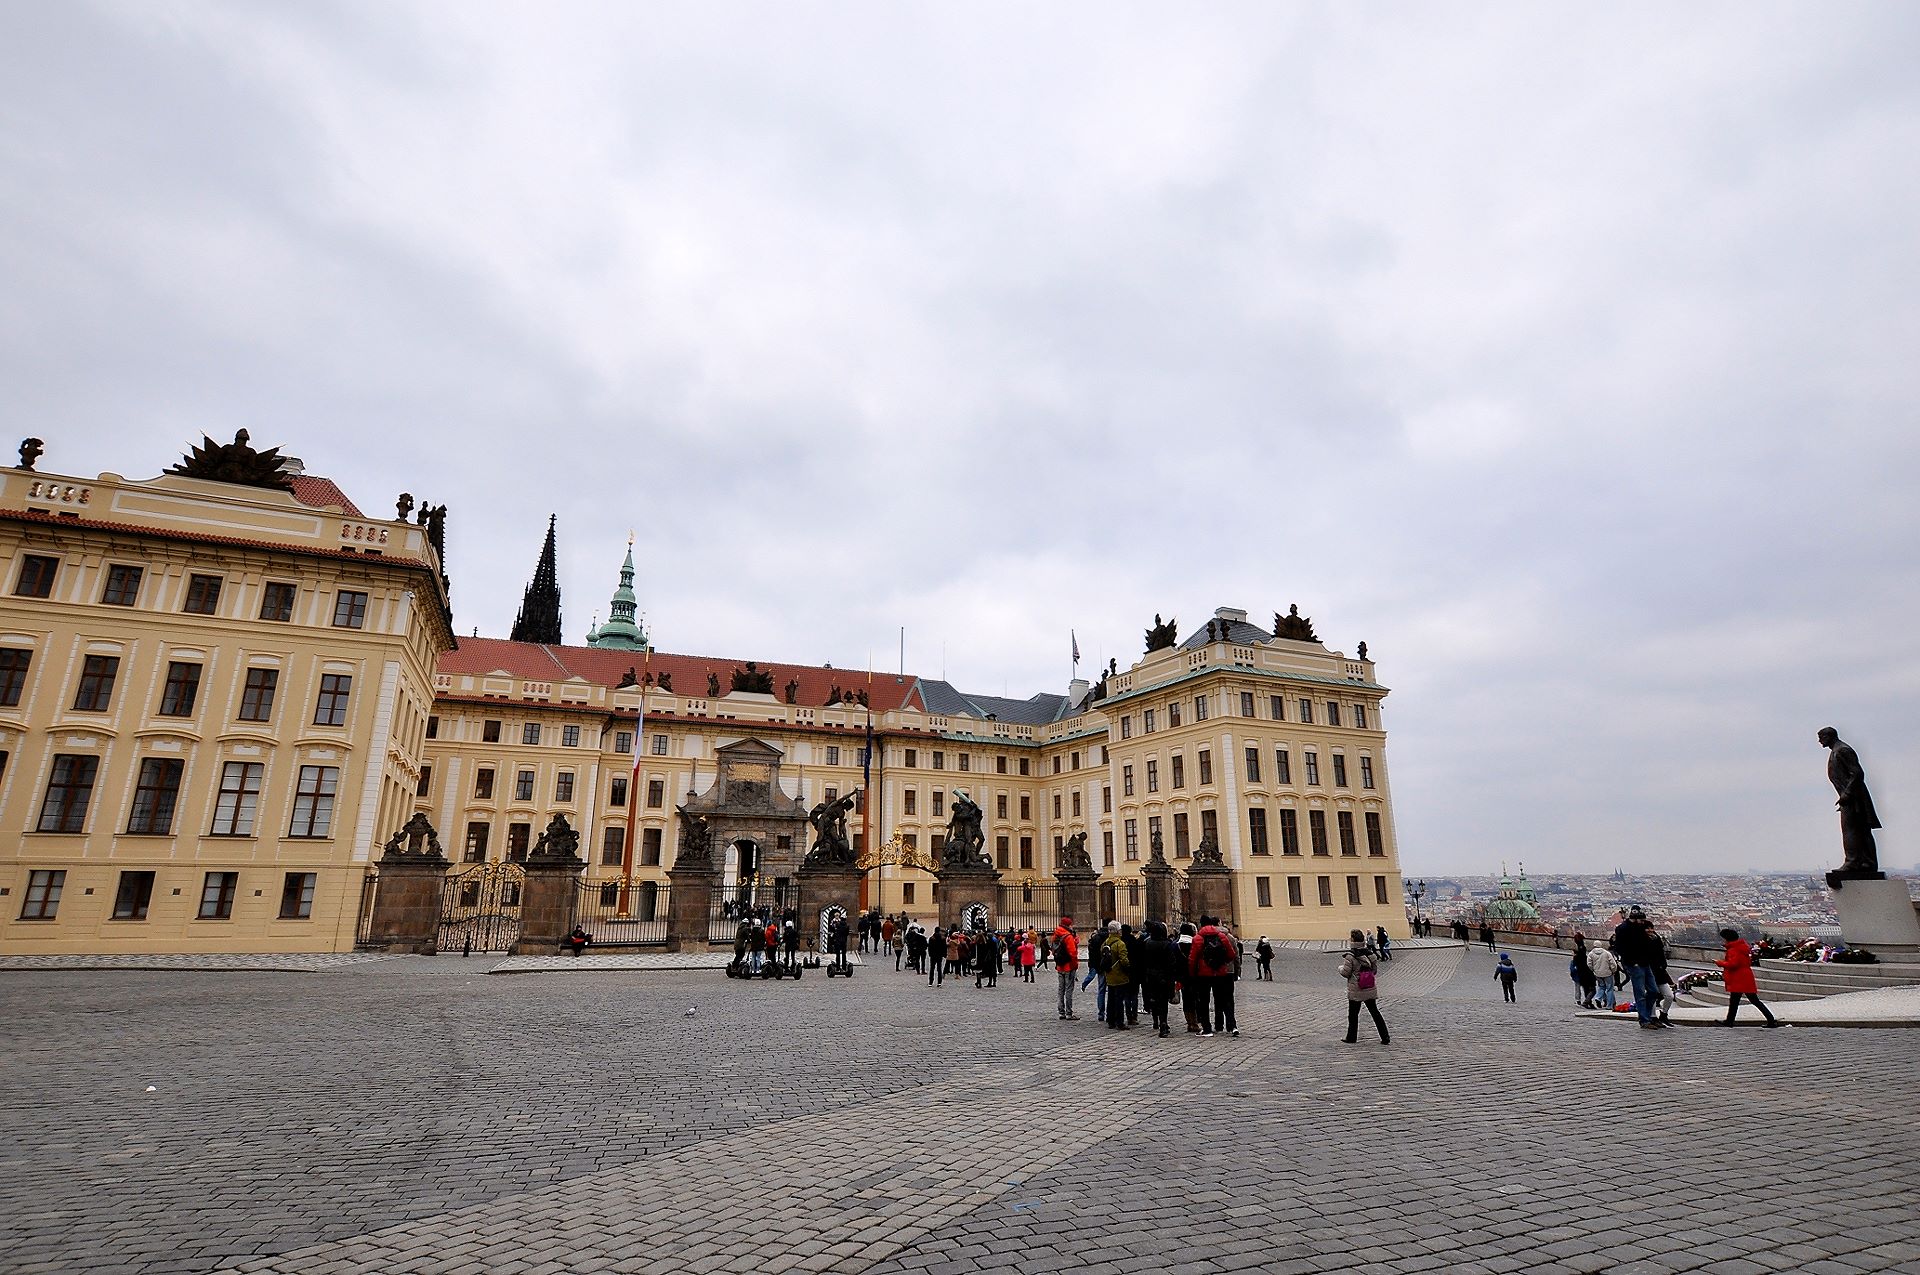 Vom Hradschin-Platz aus kommend betritt man die Prager Burg durch den Ehrenhof, gestaltet im 18. Jhdt.